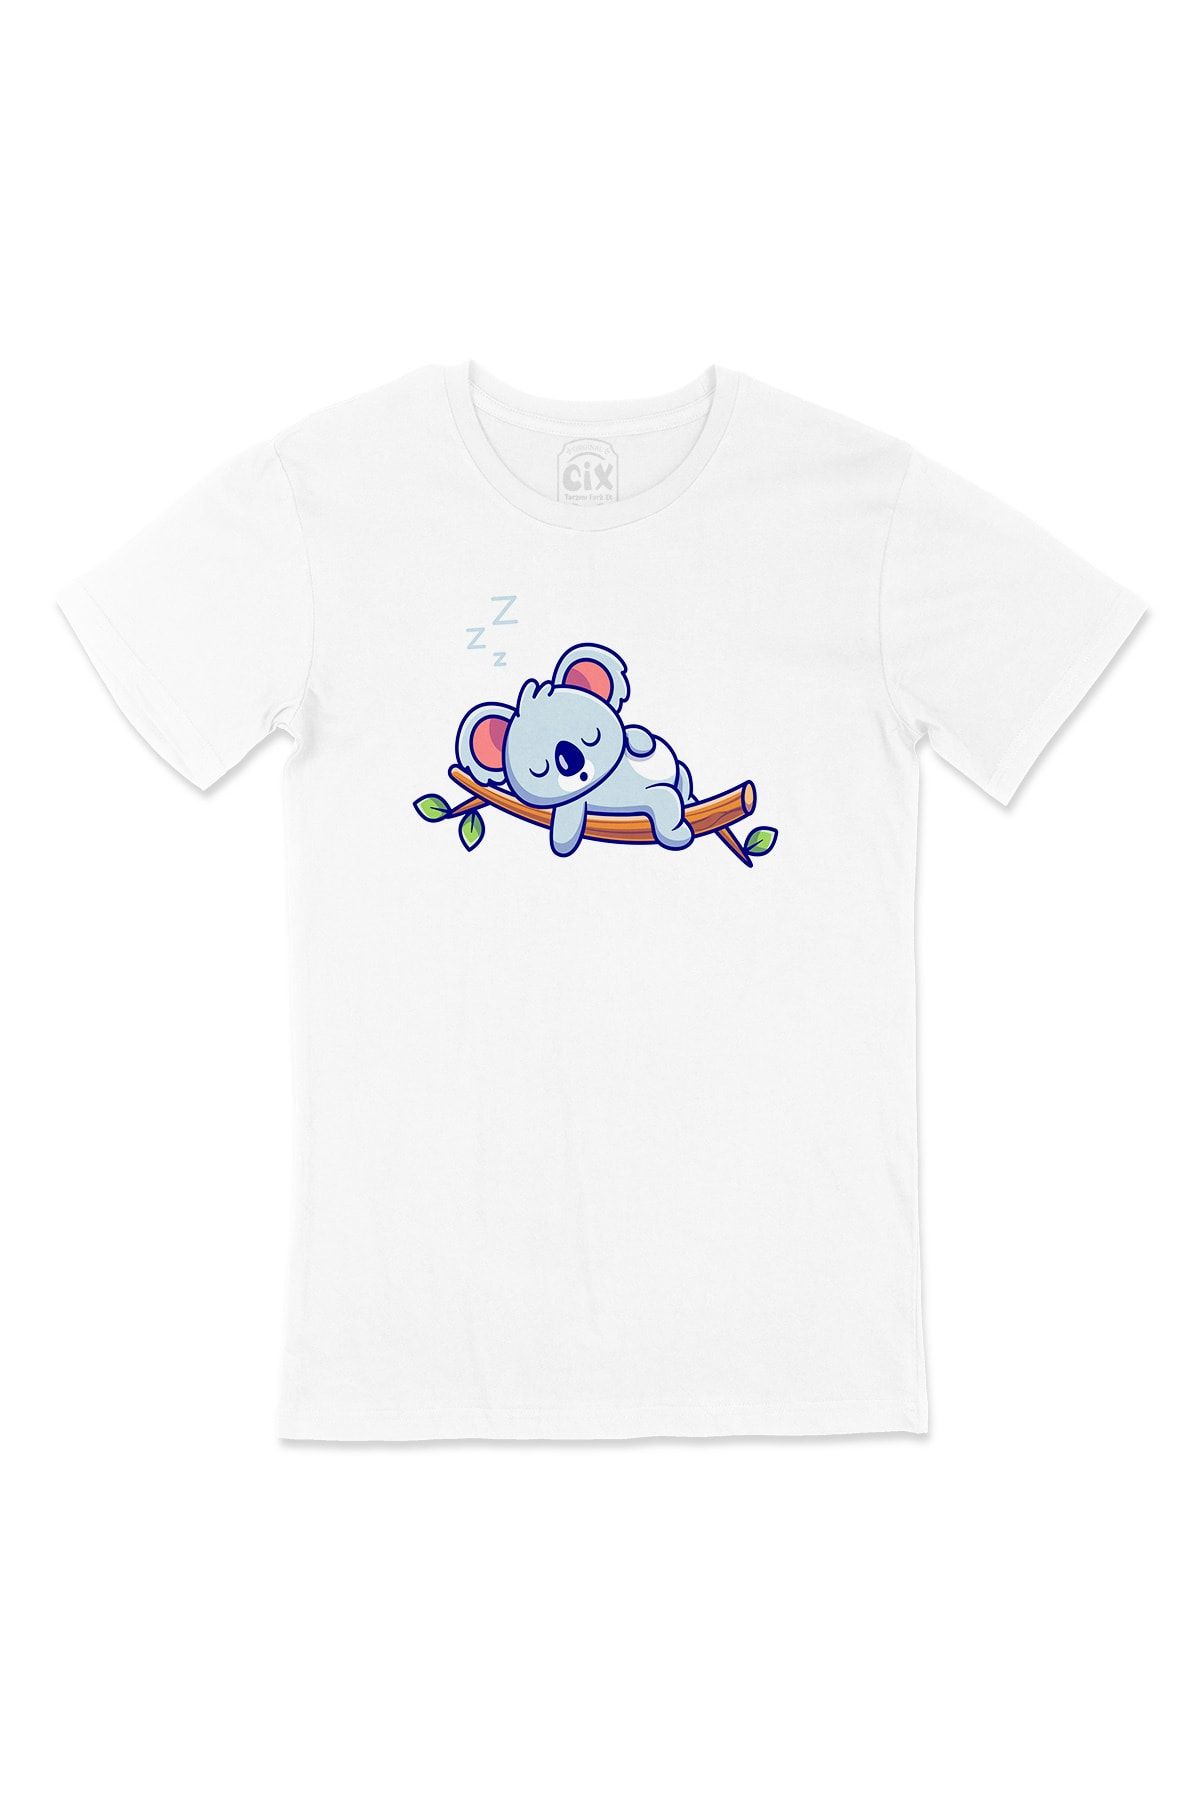 Cix Uyuyan Koala Cep Logo Tasarımlı Beyaz Tişört